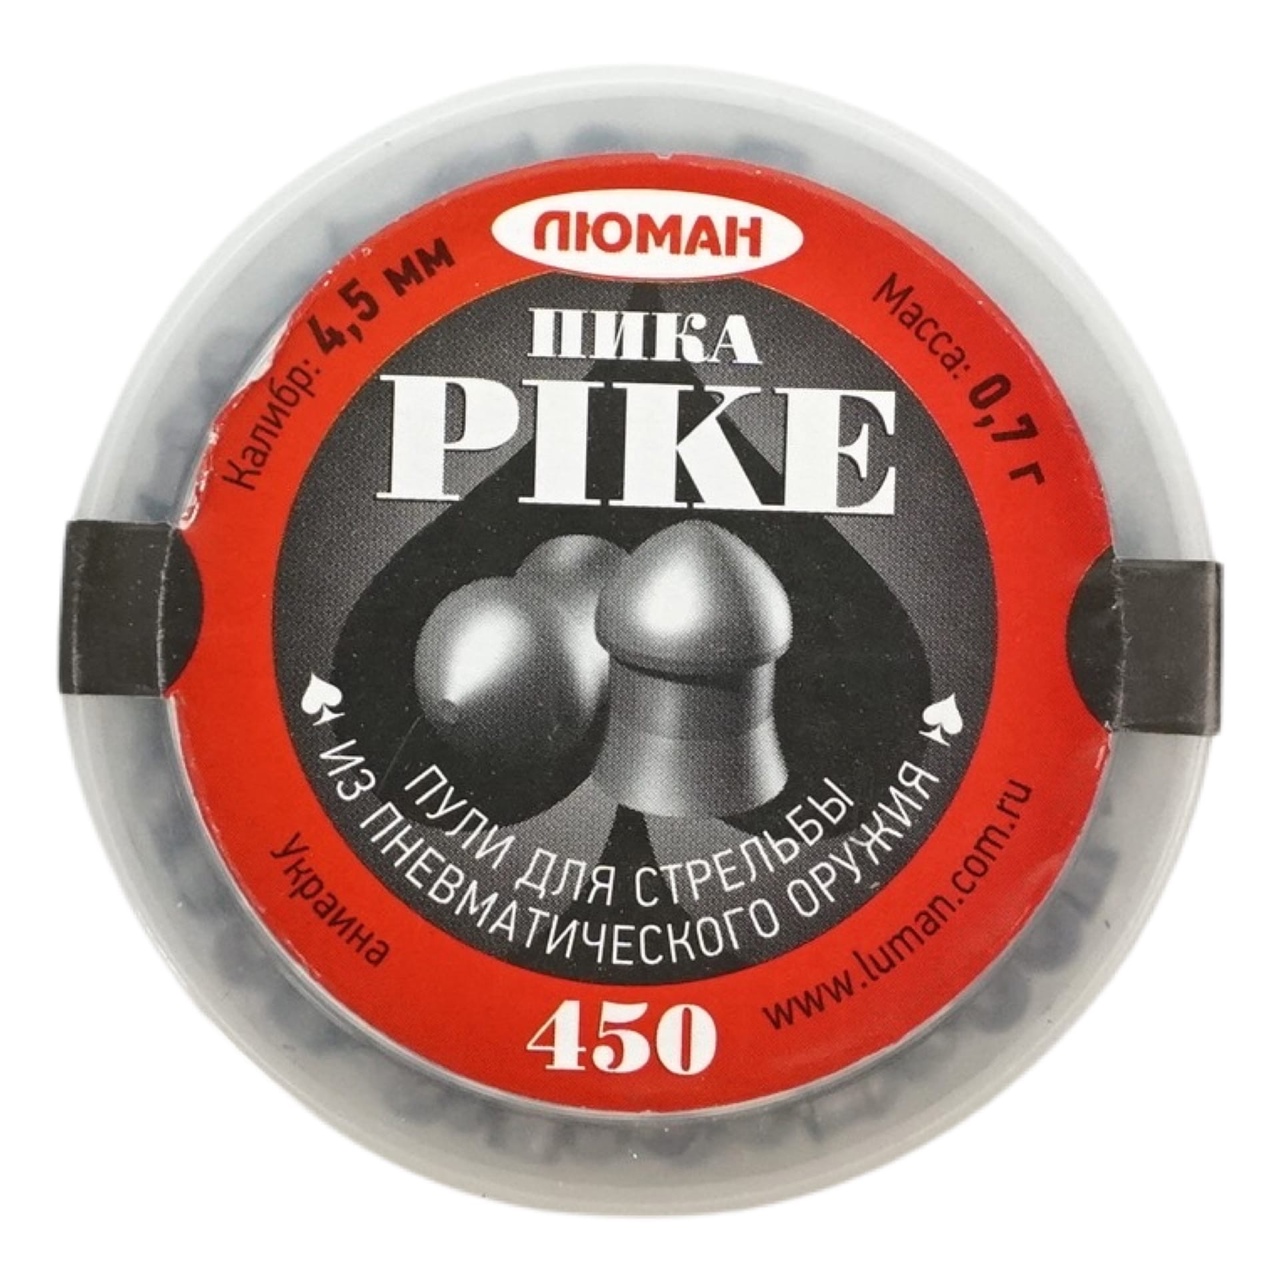 Пули Люман Pike, калибр 4,5 мм., вес 0,7 г., 450 шт